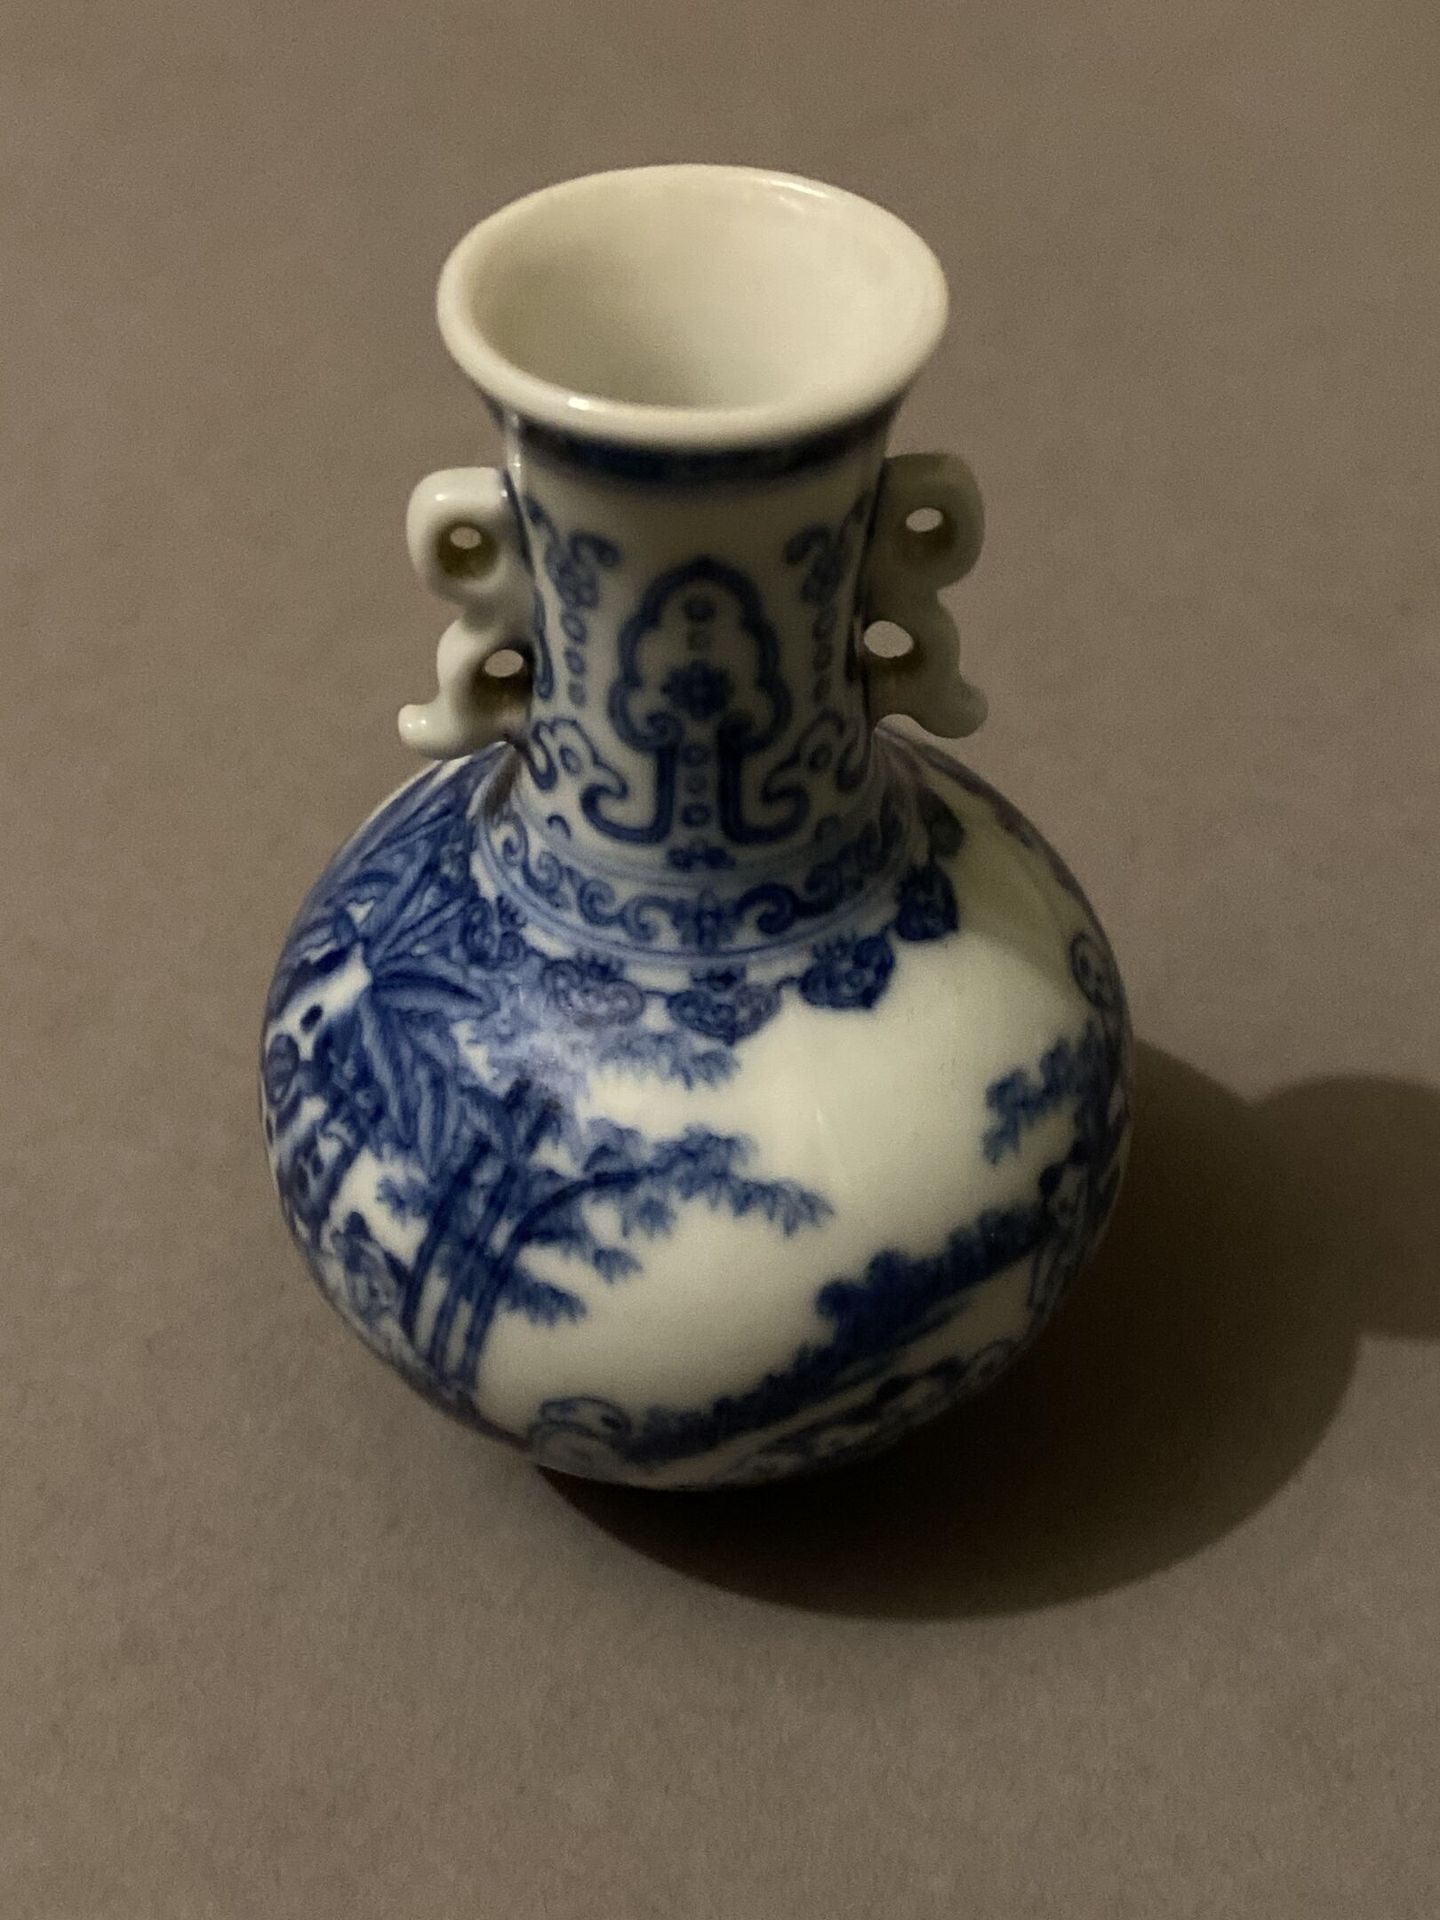 Null Small blue and white porcelain vase
H. 8,5 cm - L. 6 cm